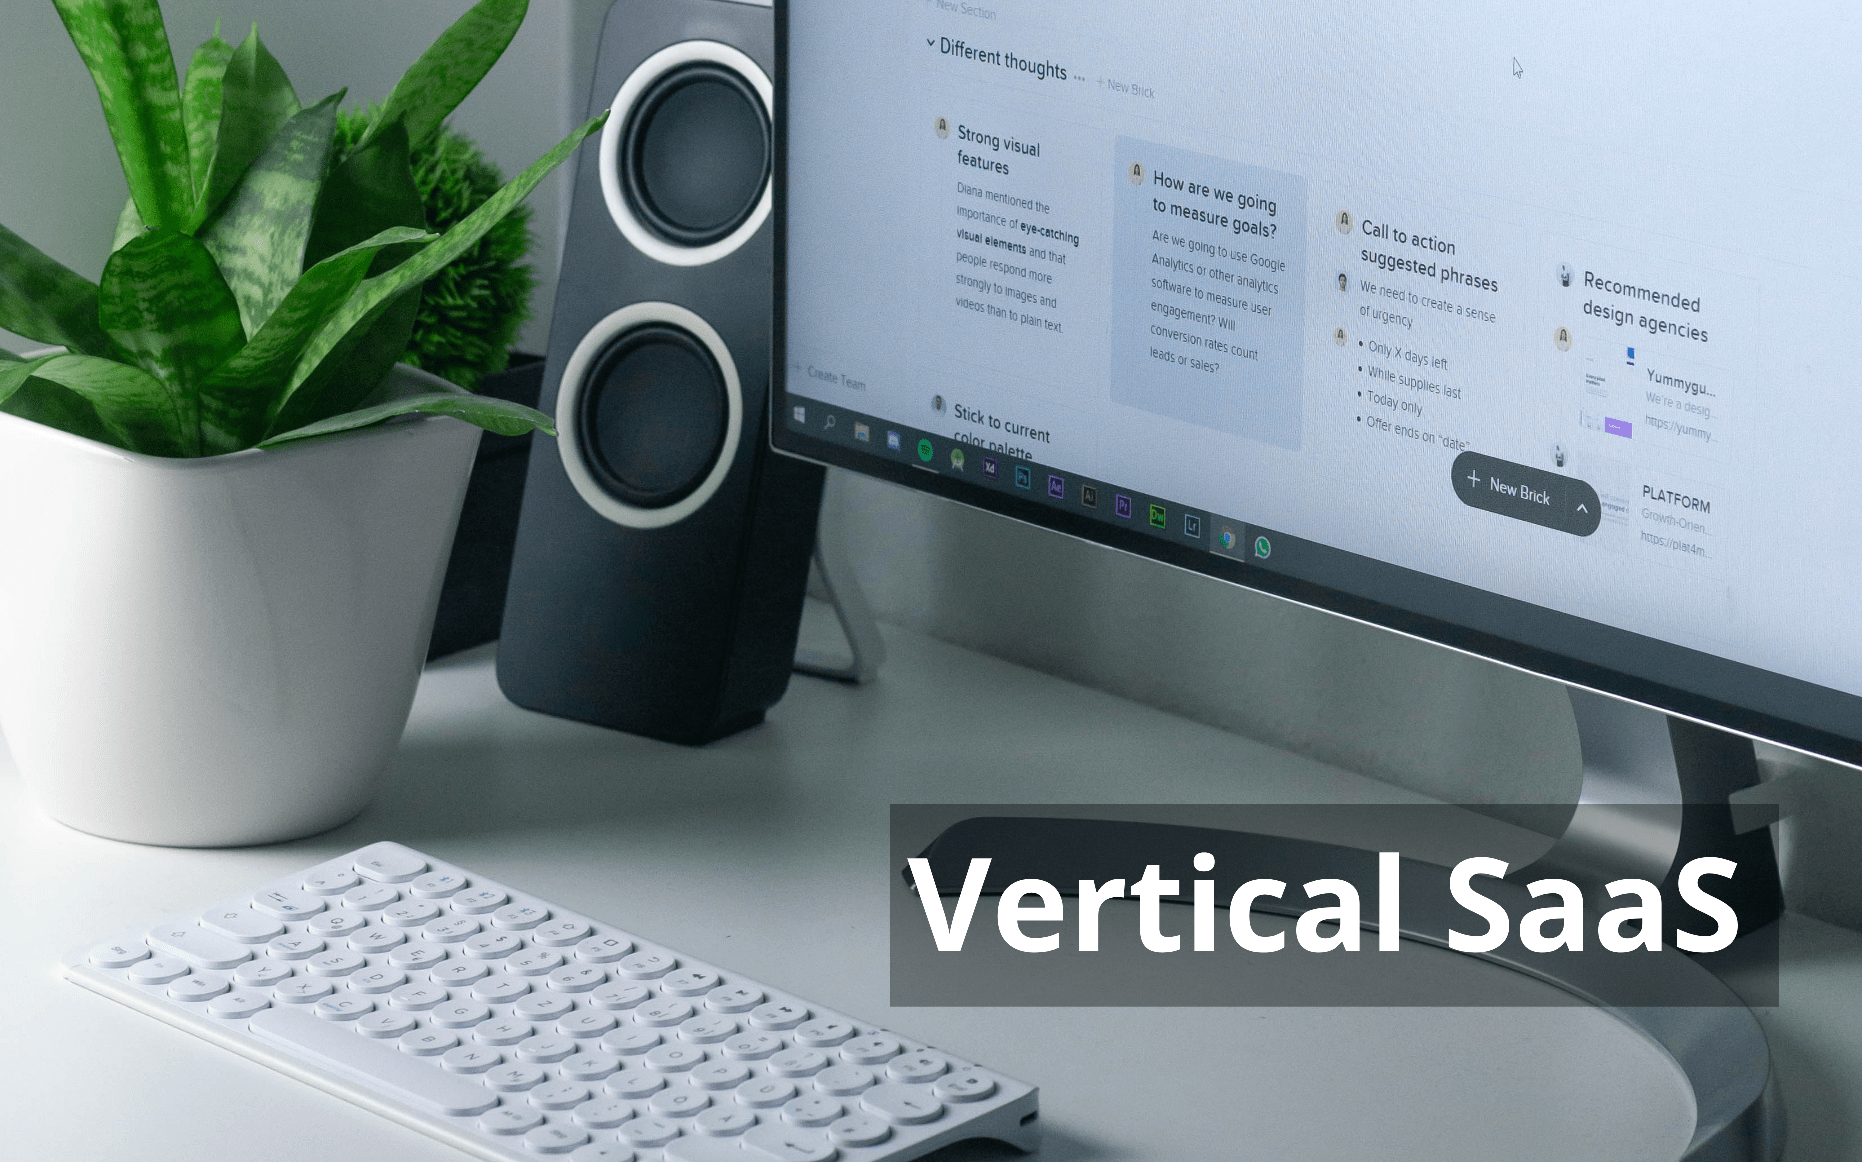 vertical saas, vertical saas companies, What is vertical saas, vertical saas landscape, vertical saas examples